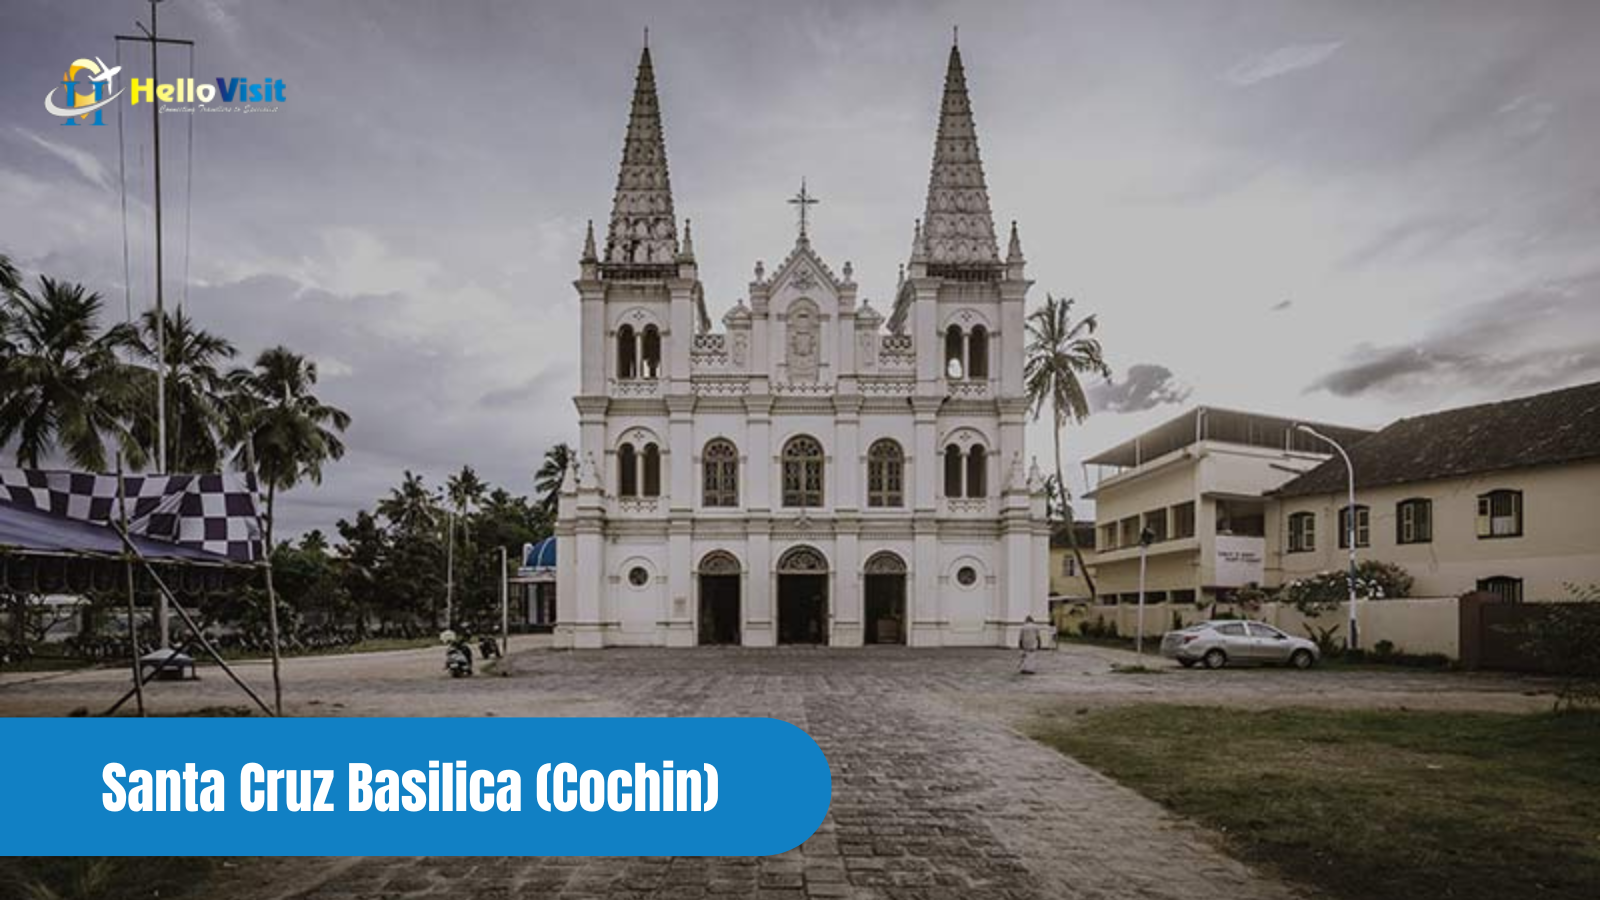 Santa Cruz Basilica (Cochin)